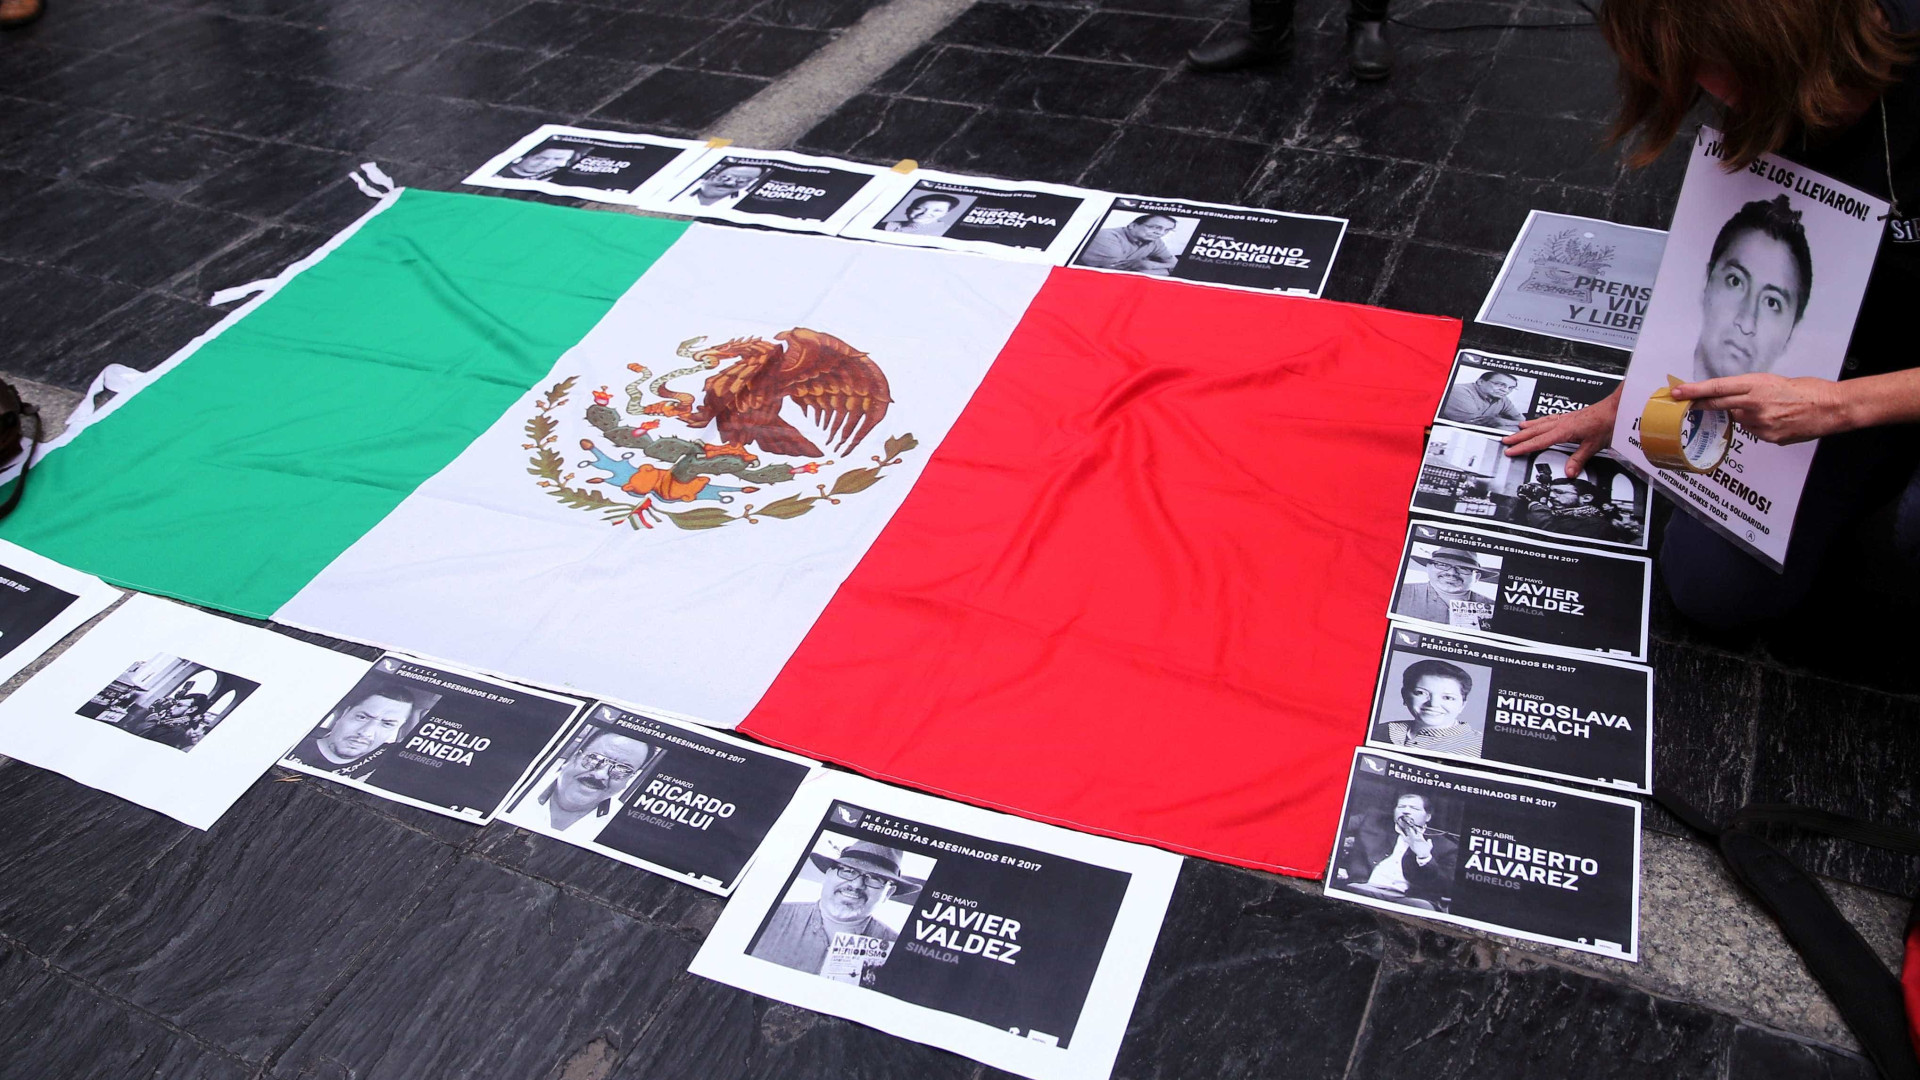 México registra maior número mensal
 de homicídios em 20 anos